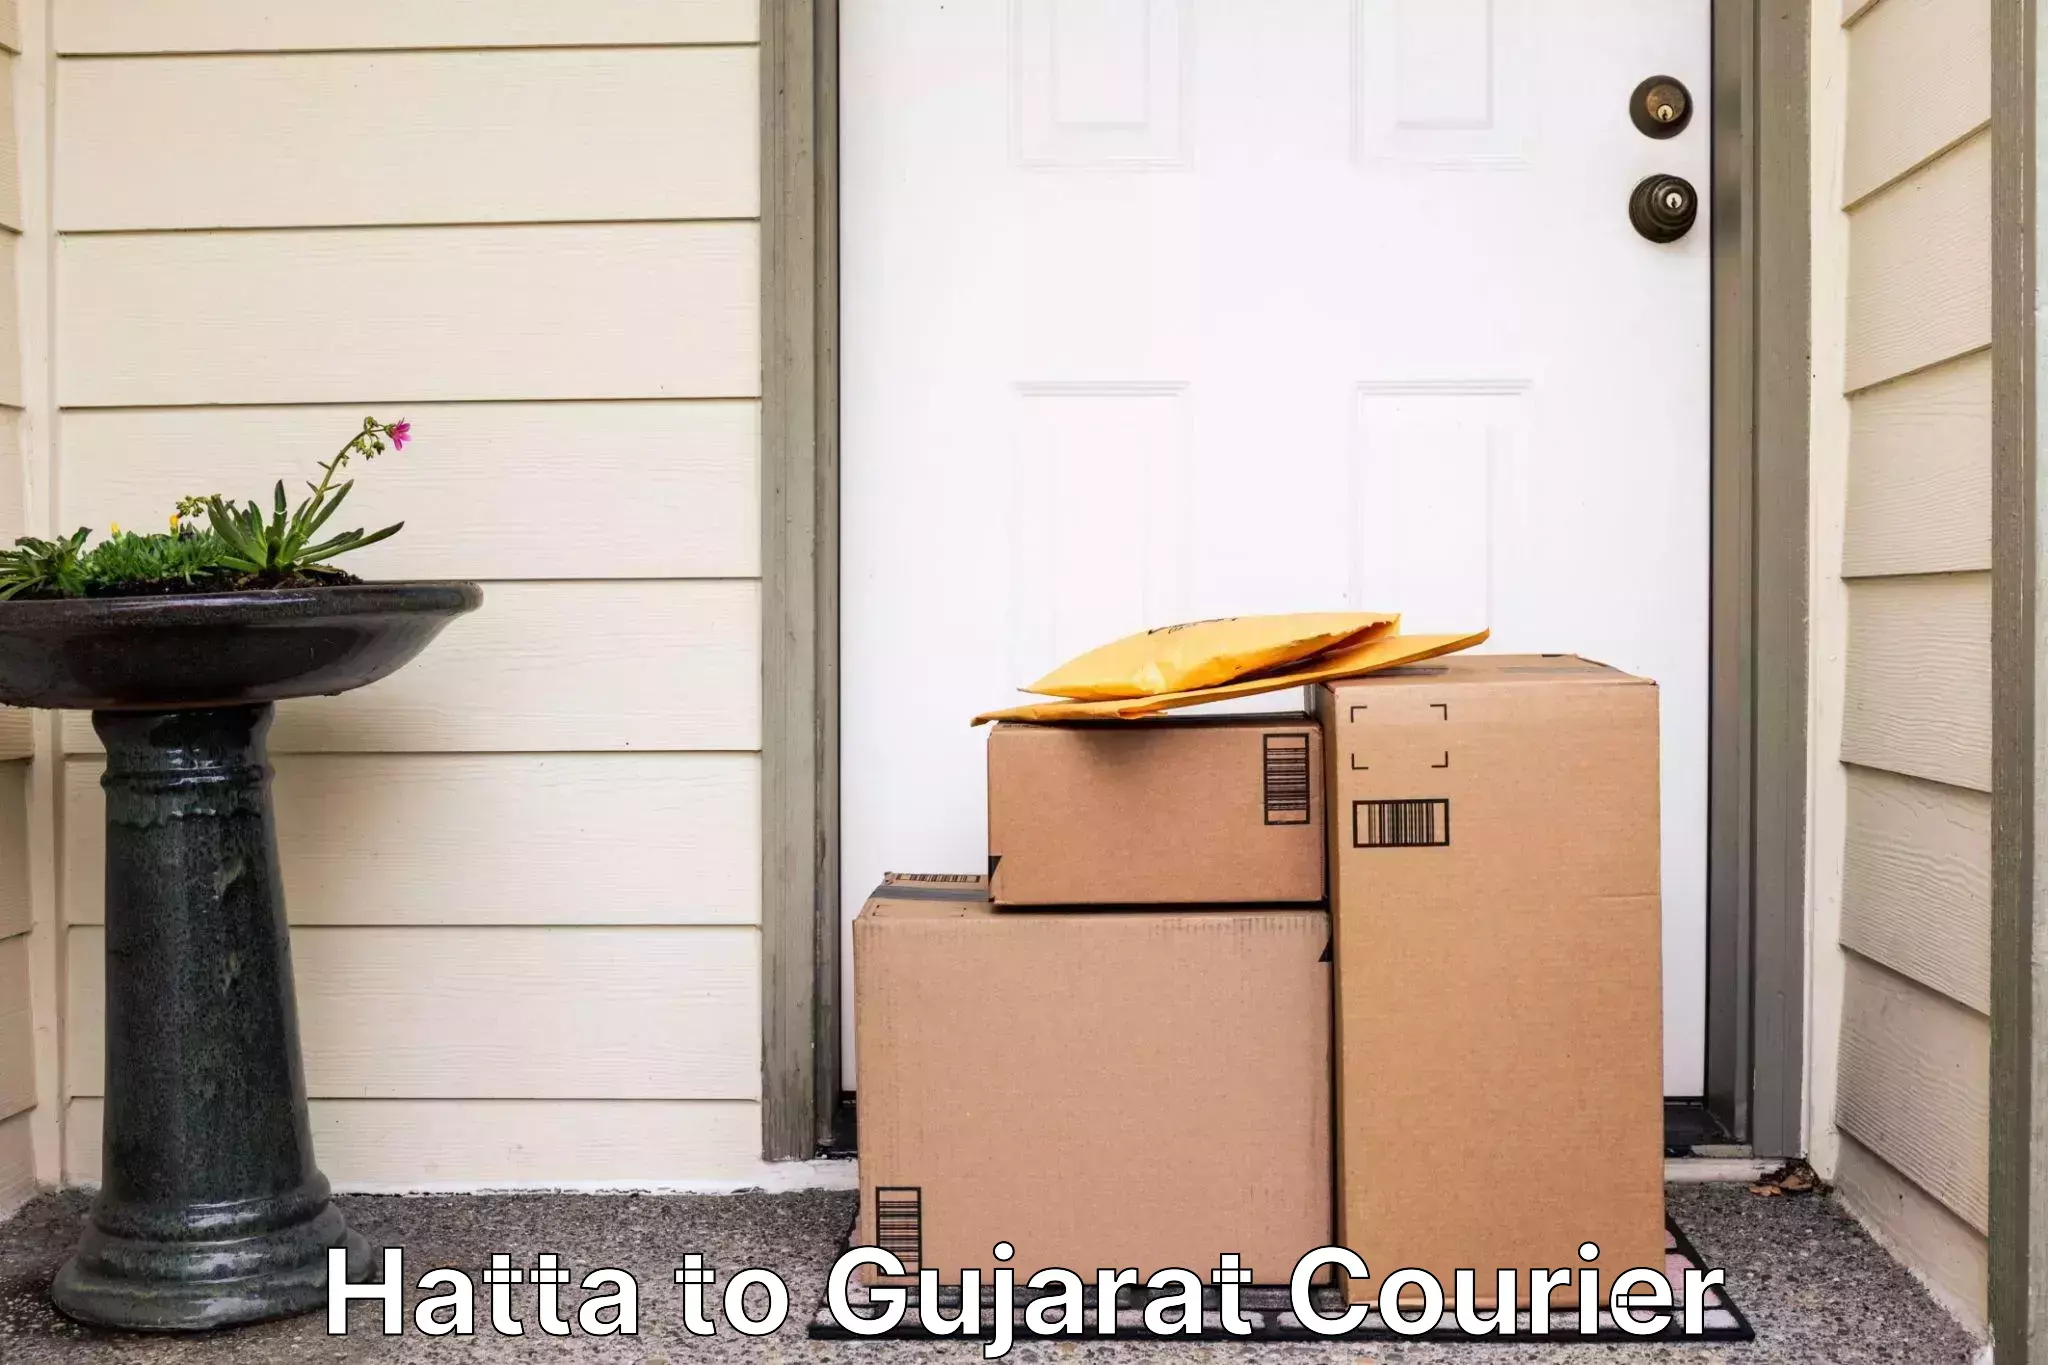 Efficient parcel service Hatta to Gujarat